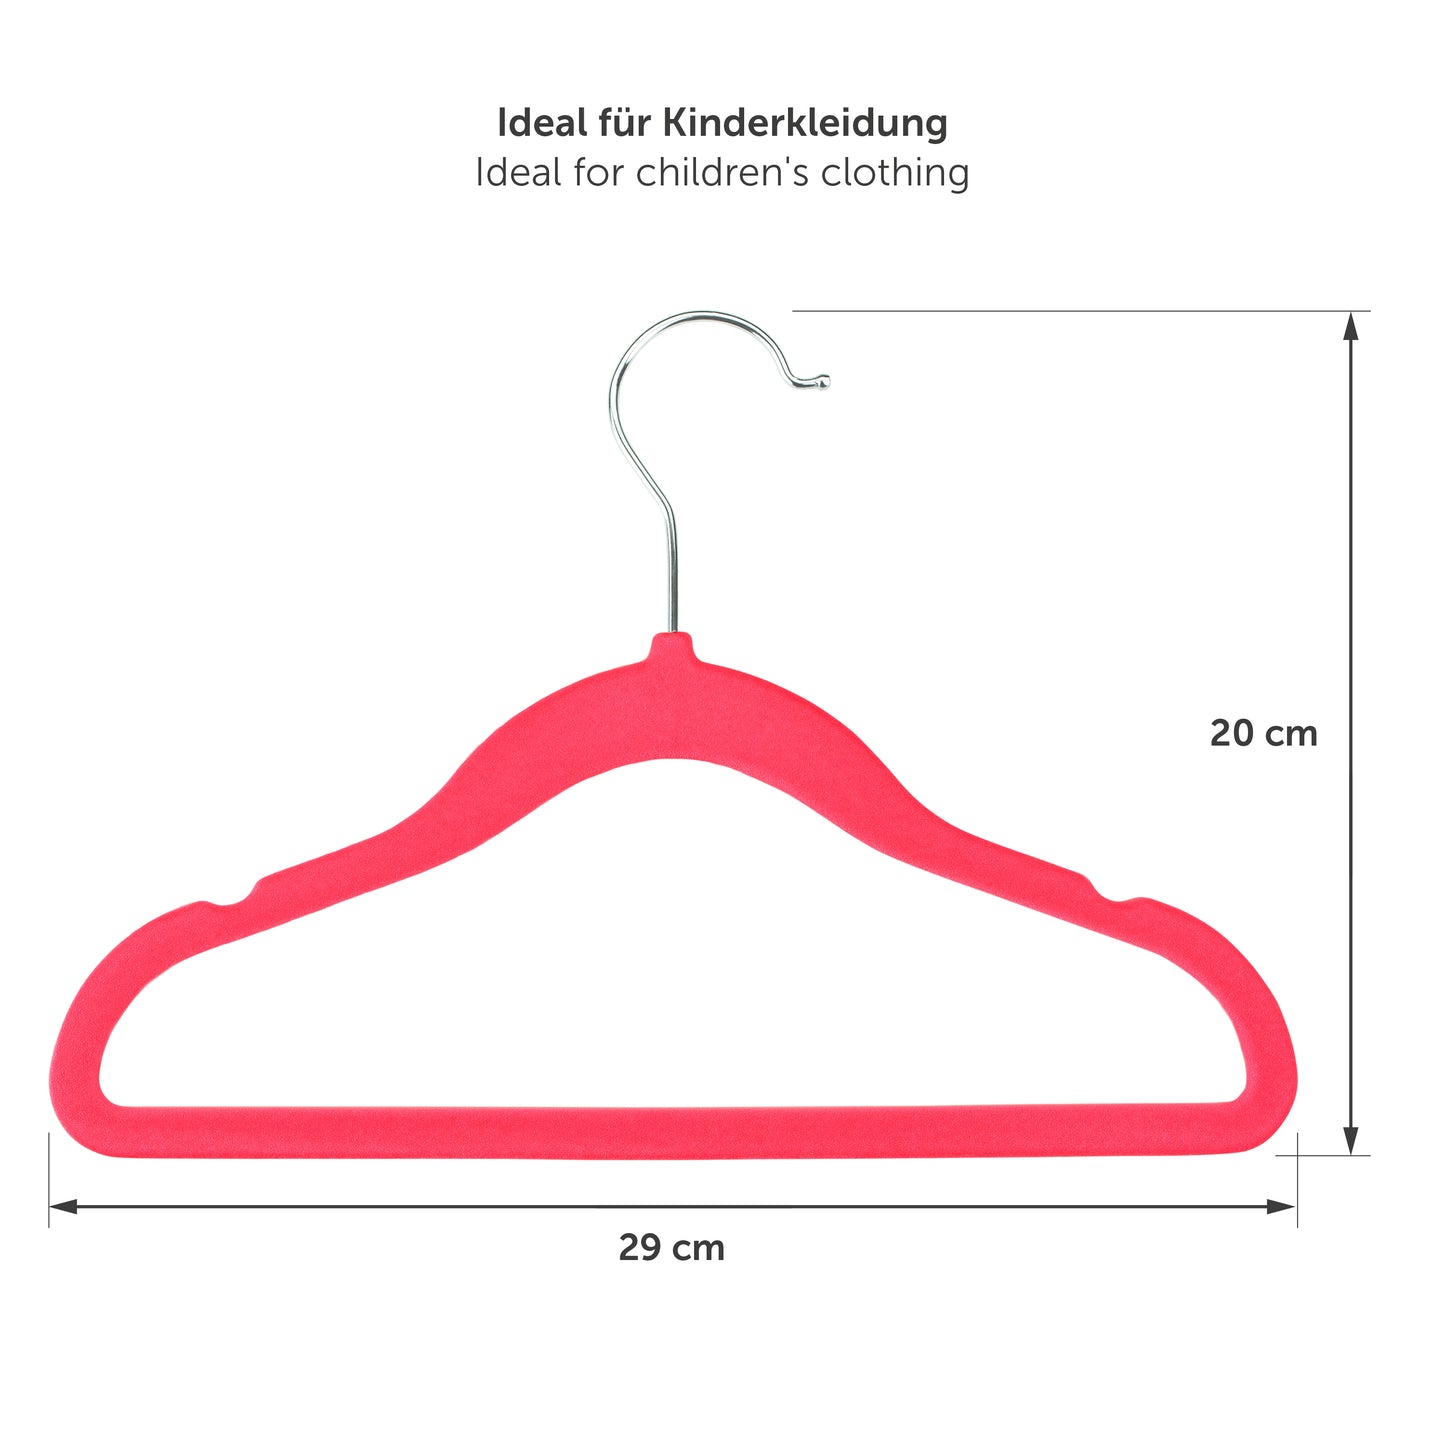 Maßangaben eines rosa Kinderkleiderbügels mit Abmessungen von 29 cm in der Breite und 20 cm in der Höhe